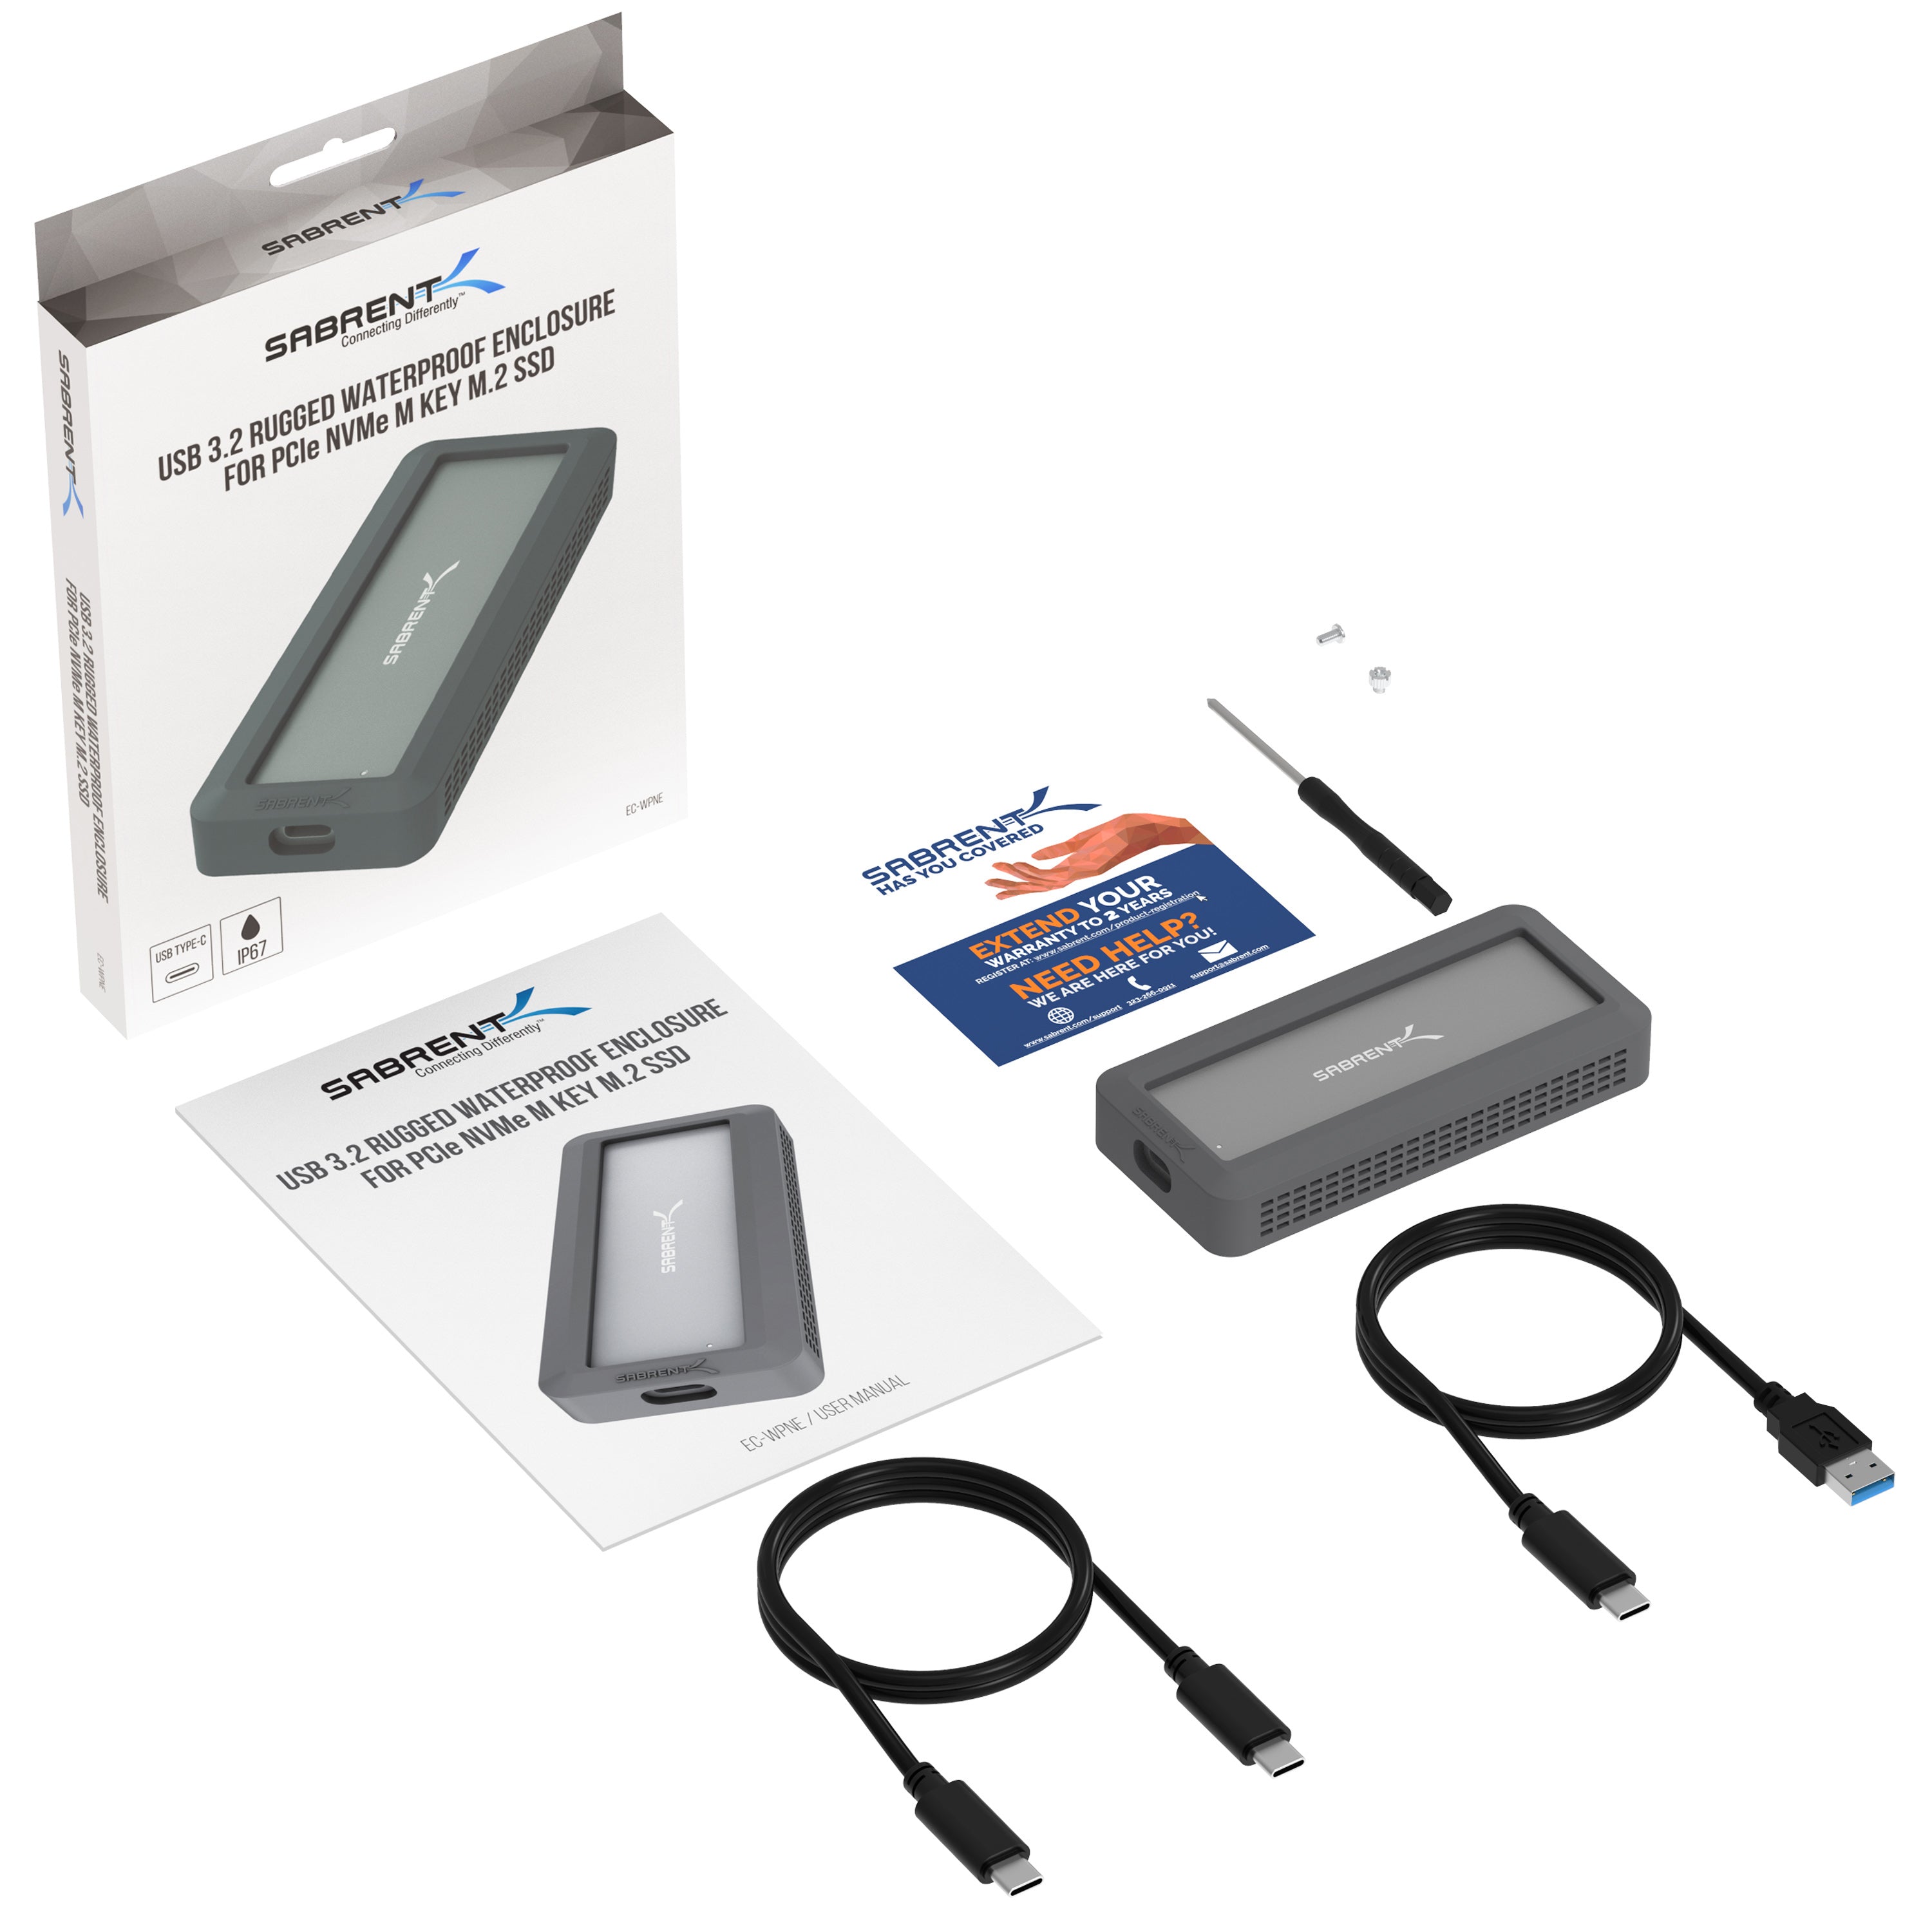 USB 3.2 Rugged Waterproof SSD Enclosure [IP67] - Sabrent